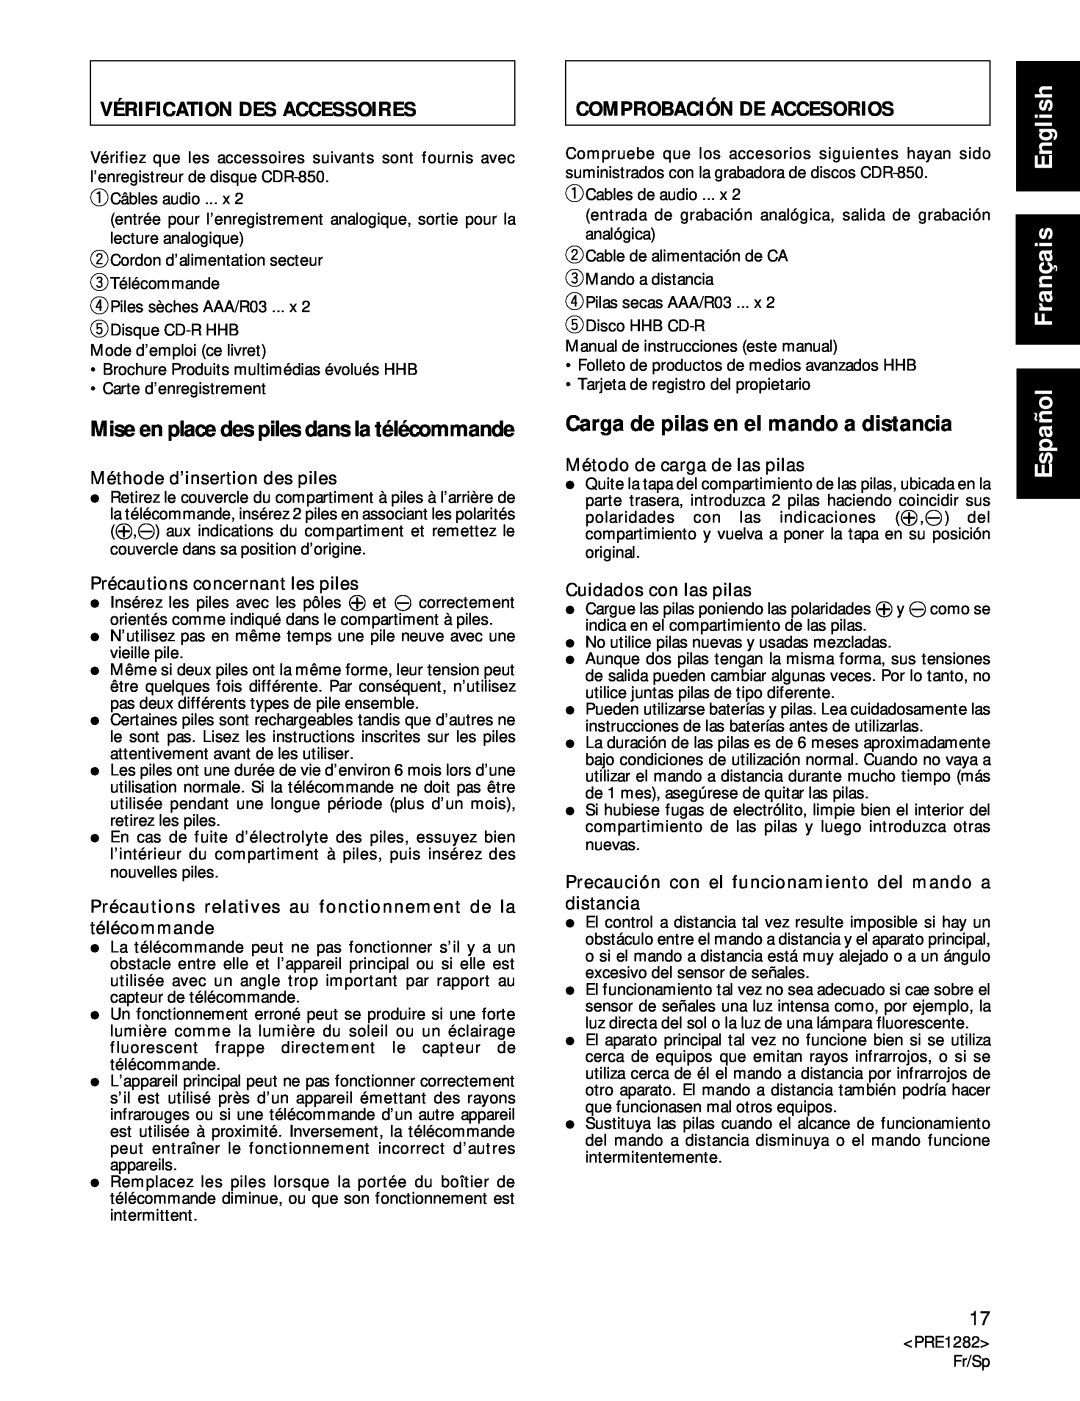 Americana Appliances CDR-850 manual English, Vérification Des Accessoires, Comprobación De Accesorios 